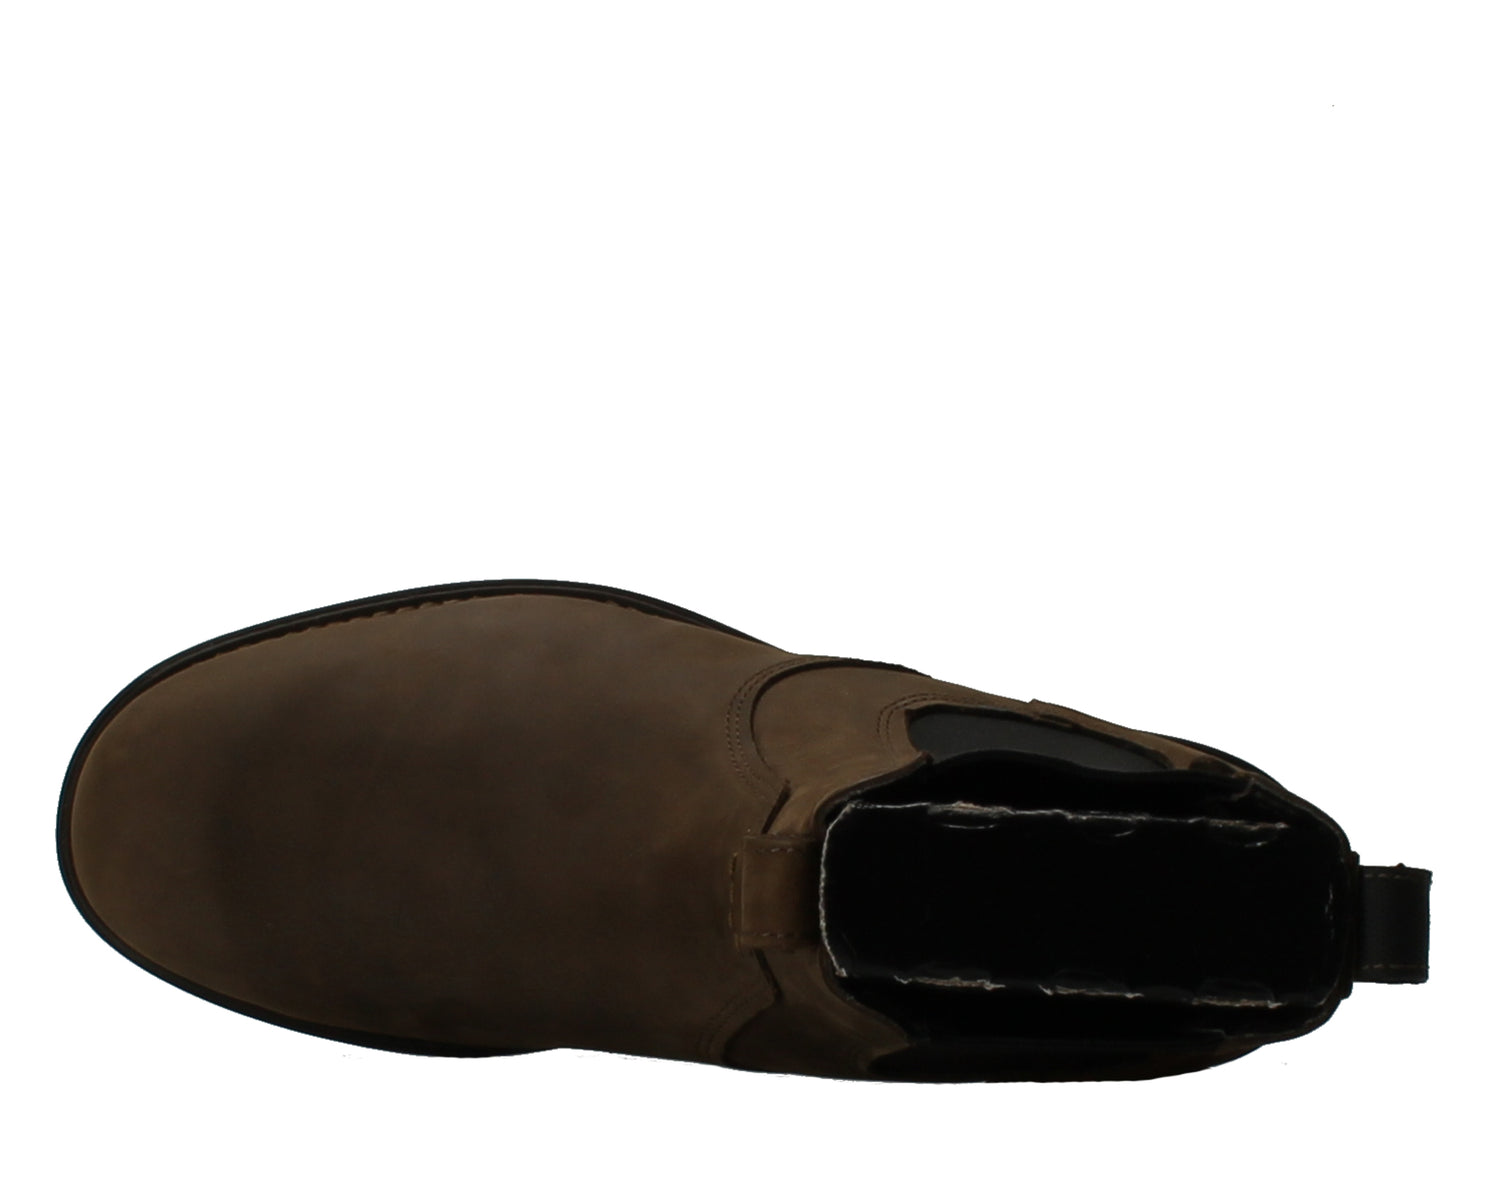 Timberland Carter Notch Plain-Toe Chelsea Men's Boots